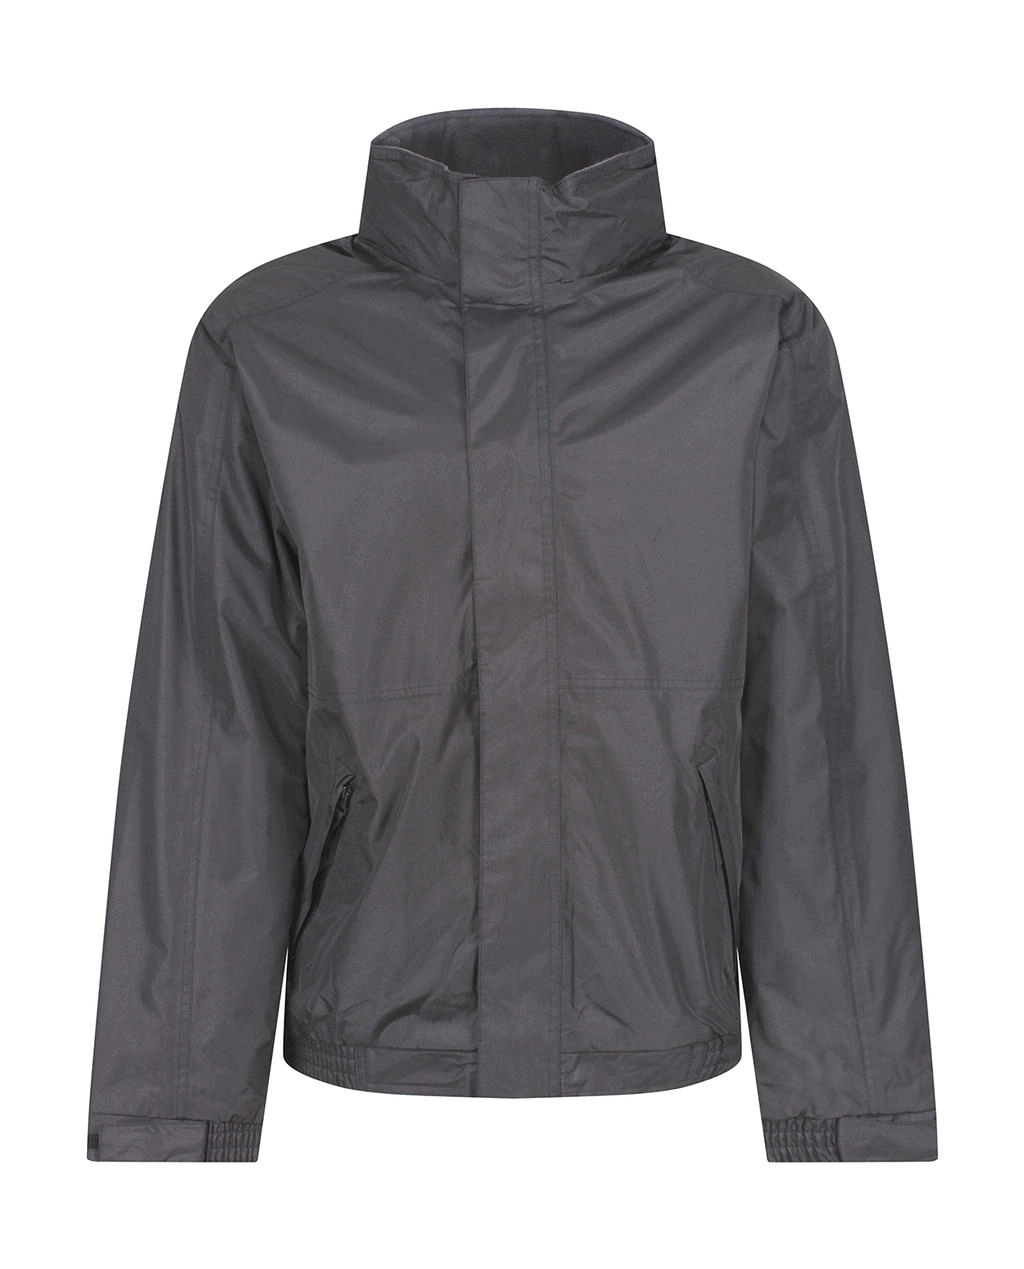 Eco Dover Jacket zum Besticken und Bedrucken in der Farbe Seal Grey/Black mit Ihren Logo, Schriftzug oder Motiv.